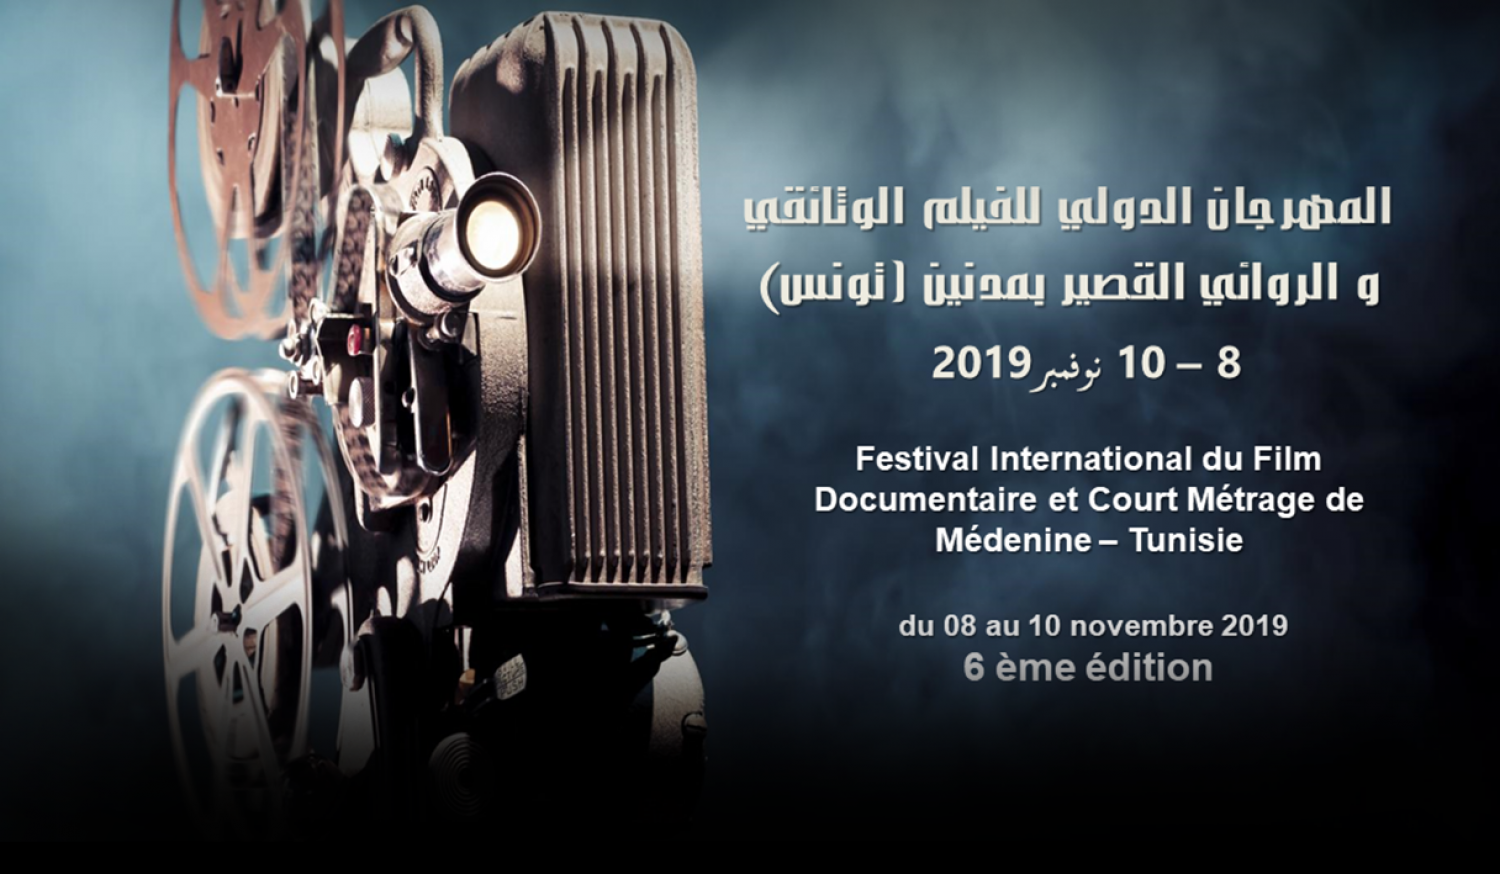 International Documentary Film Festival And Short Film of Medenine